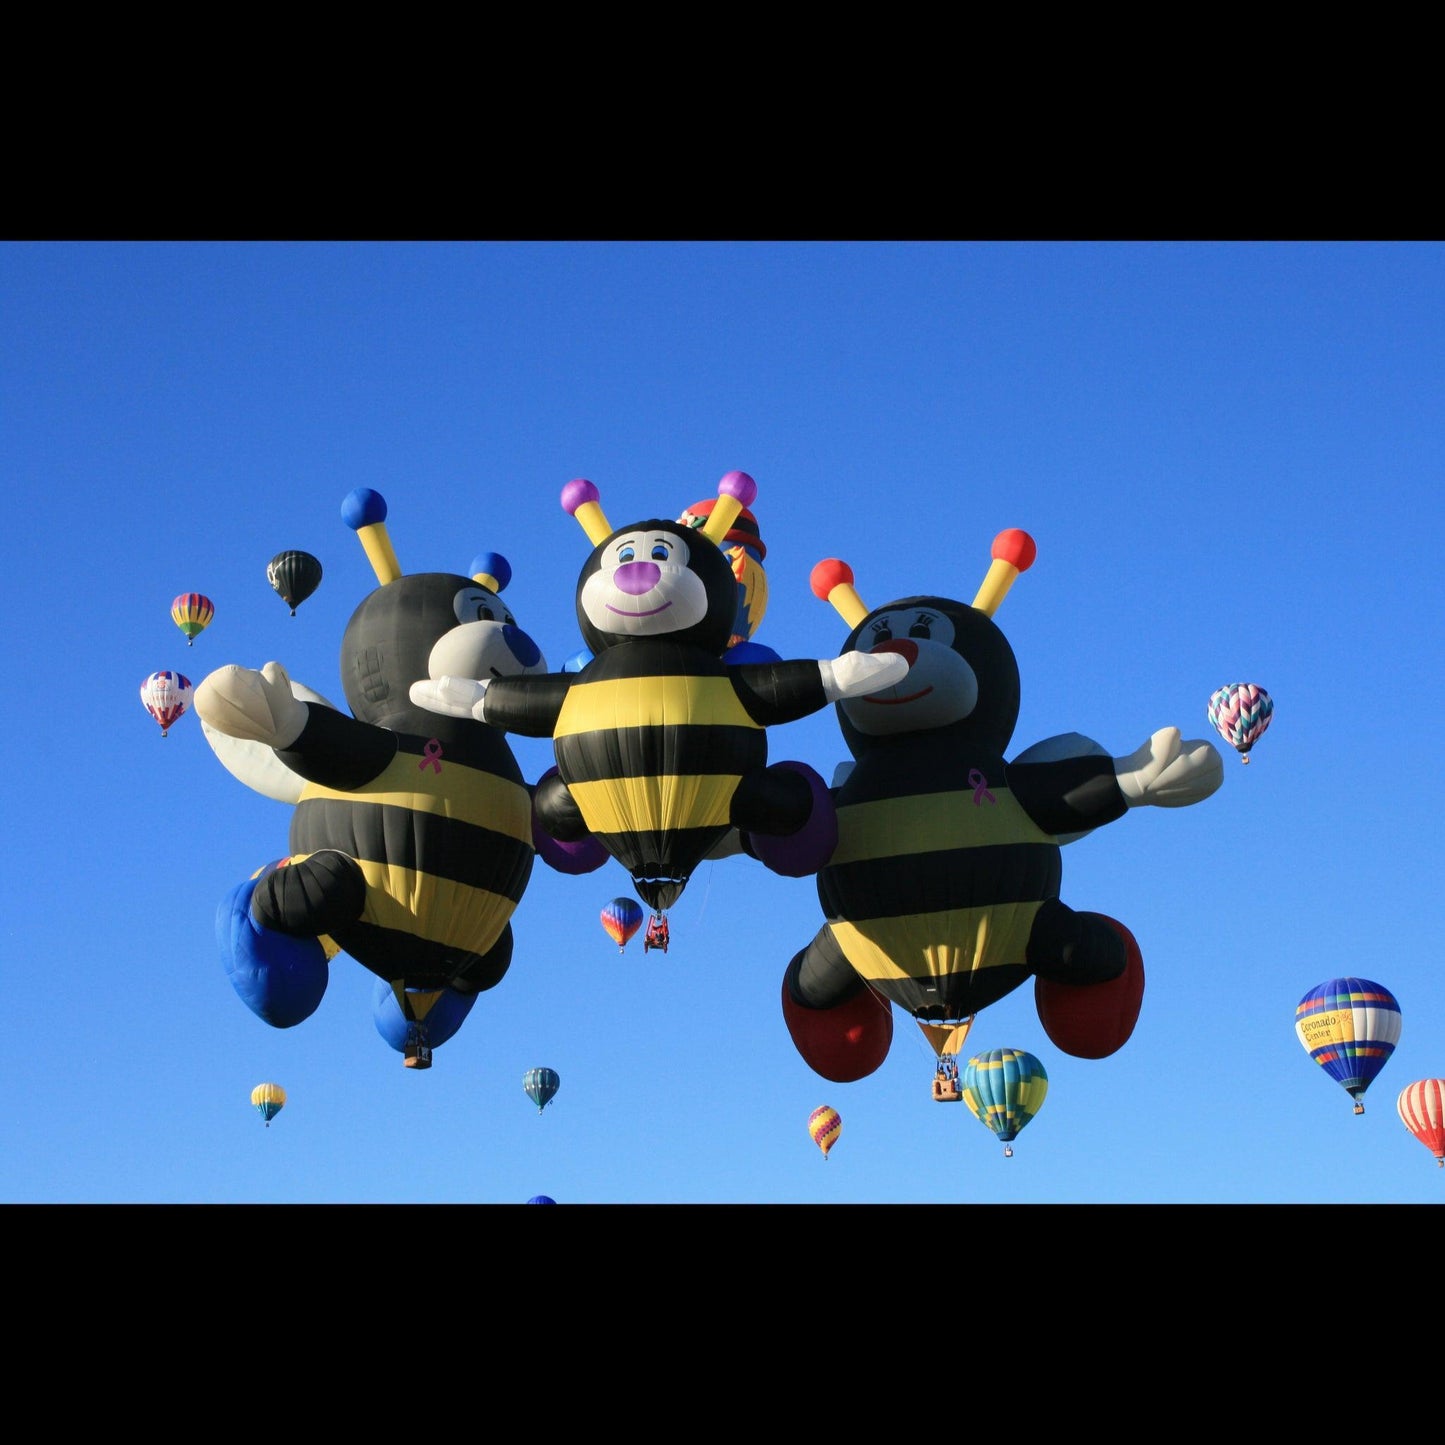 hot-air-balloon-bee-family-v-isenhower-photography - V. Isenhower Photography